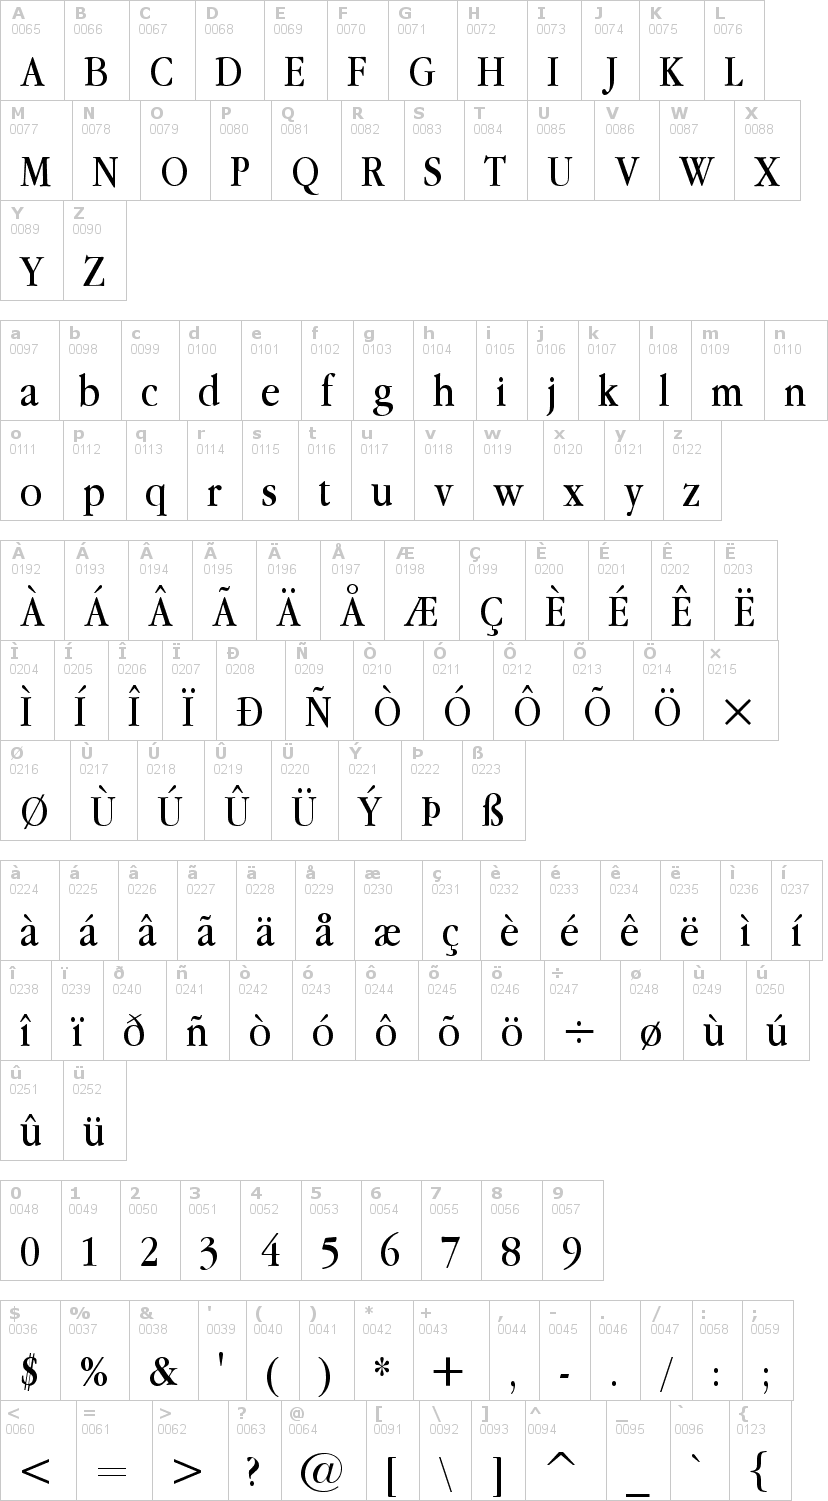 Lettere dell'alfabeto del font apple-garamond con le quali è possibile realizzare adesivi prespaziati